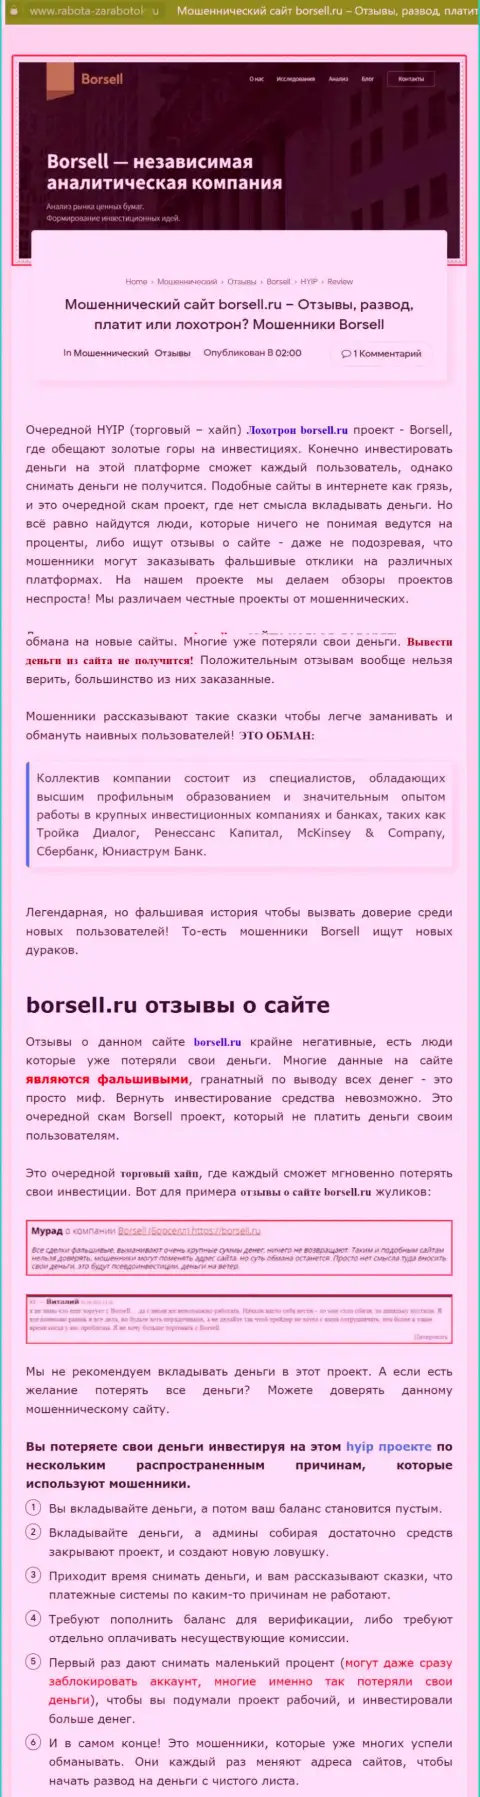 Внимательно просмотрите условия взаимодействия Borsell Ru, в организации лохотронят (обзор)